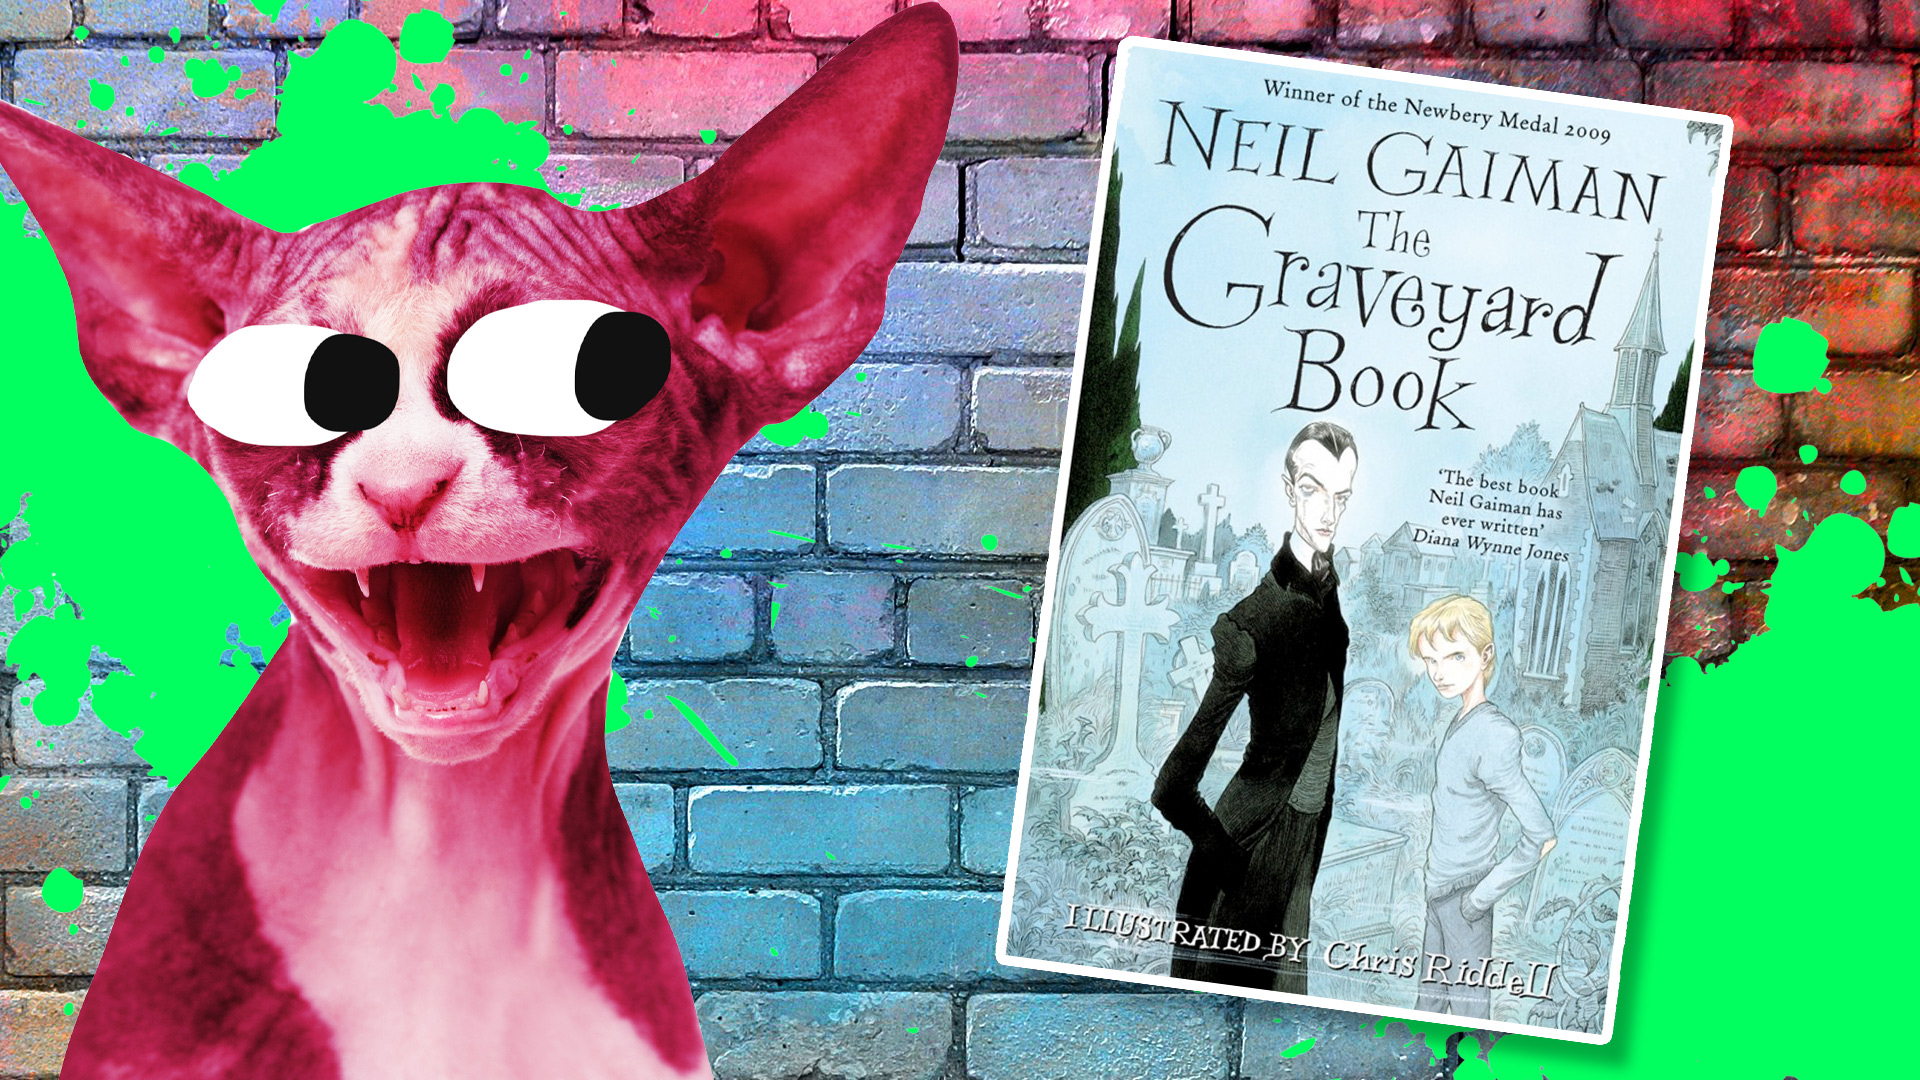 Neil Gaiman's novel The Graveyard Book